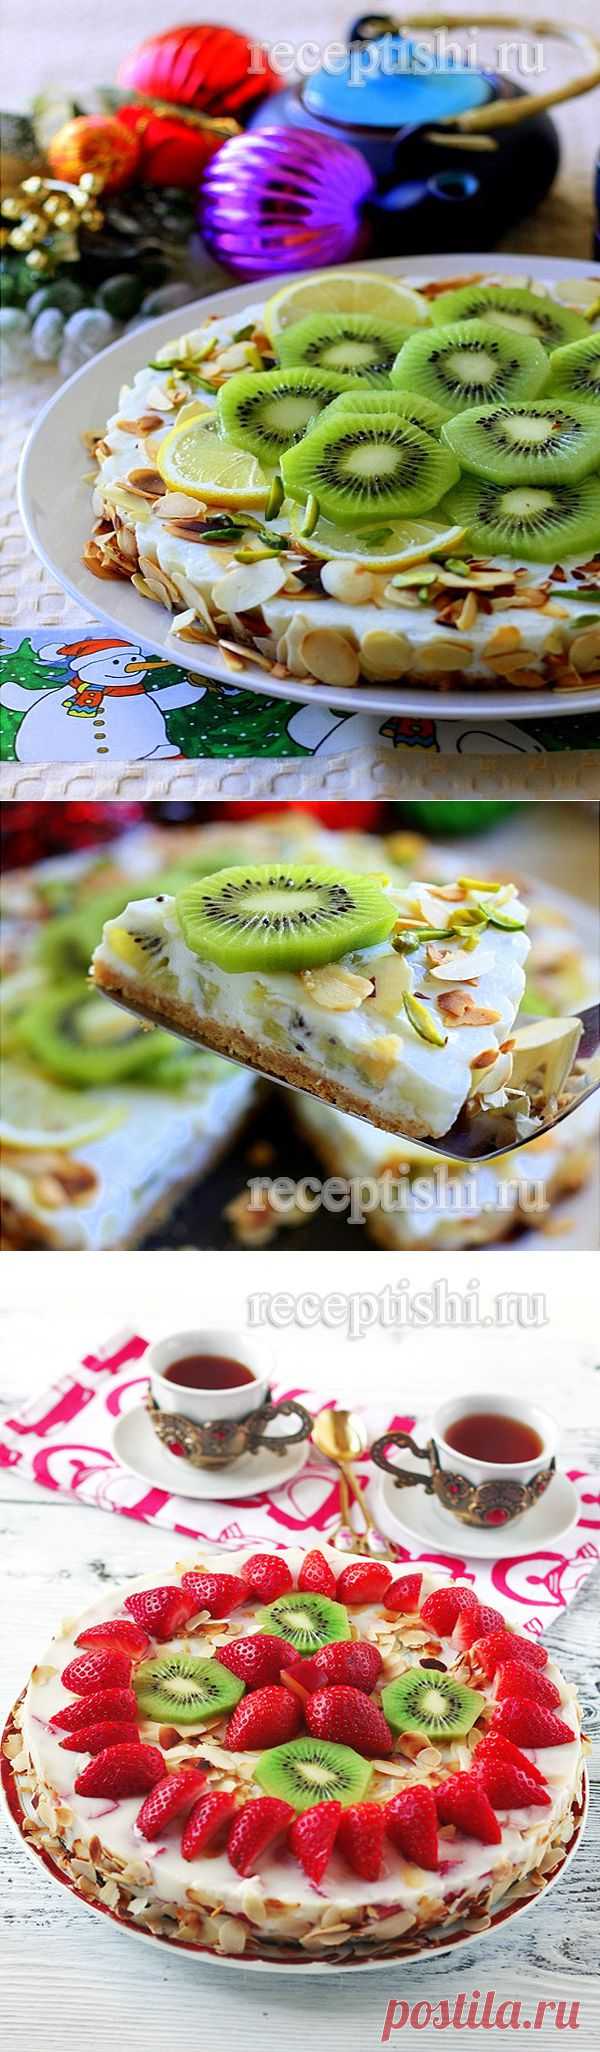 Йогуртовый торт с киви без выпечки | Кулинарные рецепты с фото на Рецептыши.ру